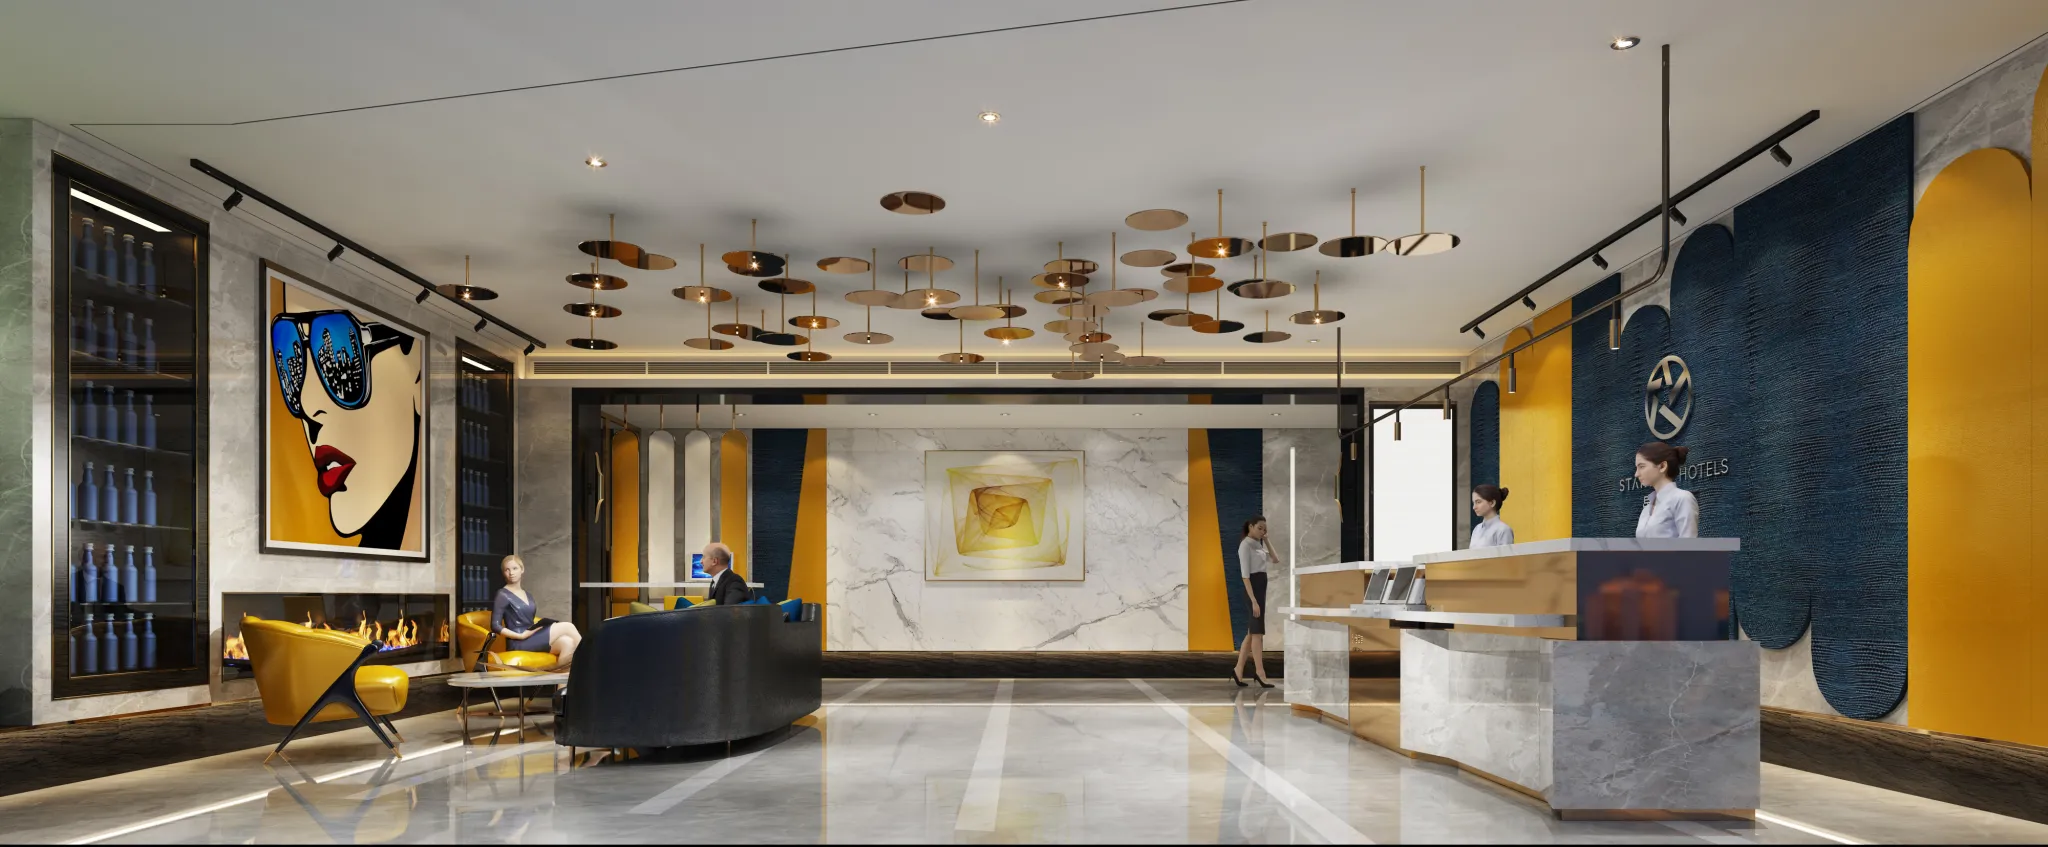 Cooldesign Interior 20 – Public Space – HOTEL – 3